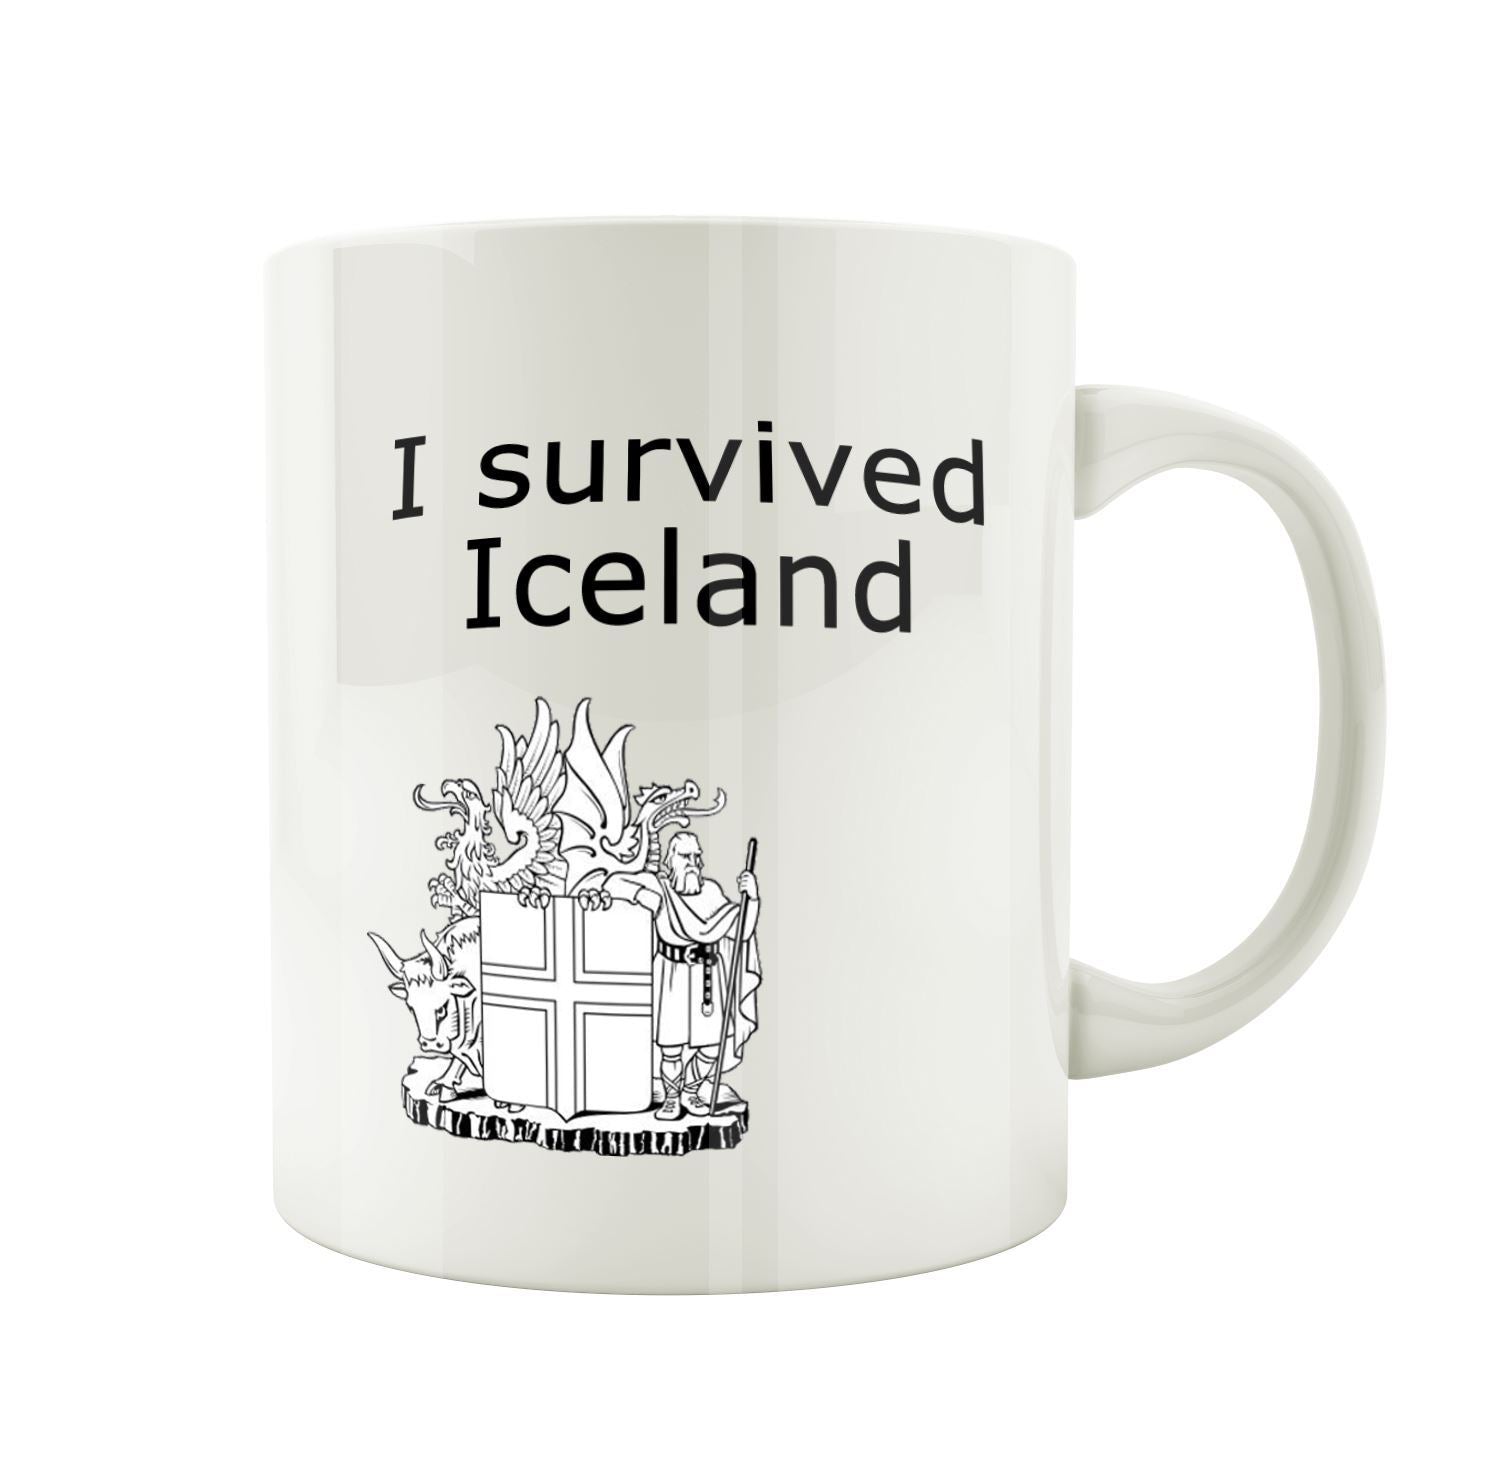 I survived Iceland